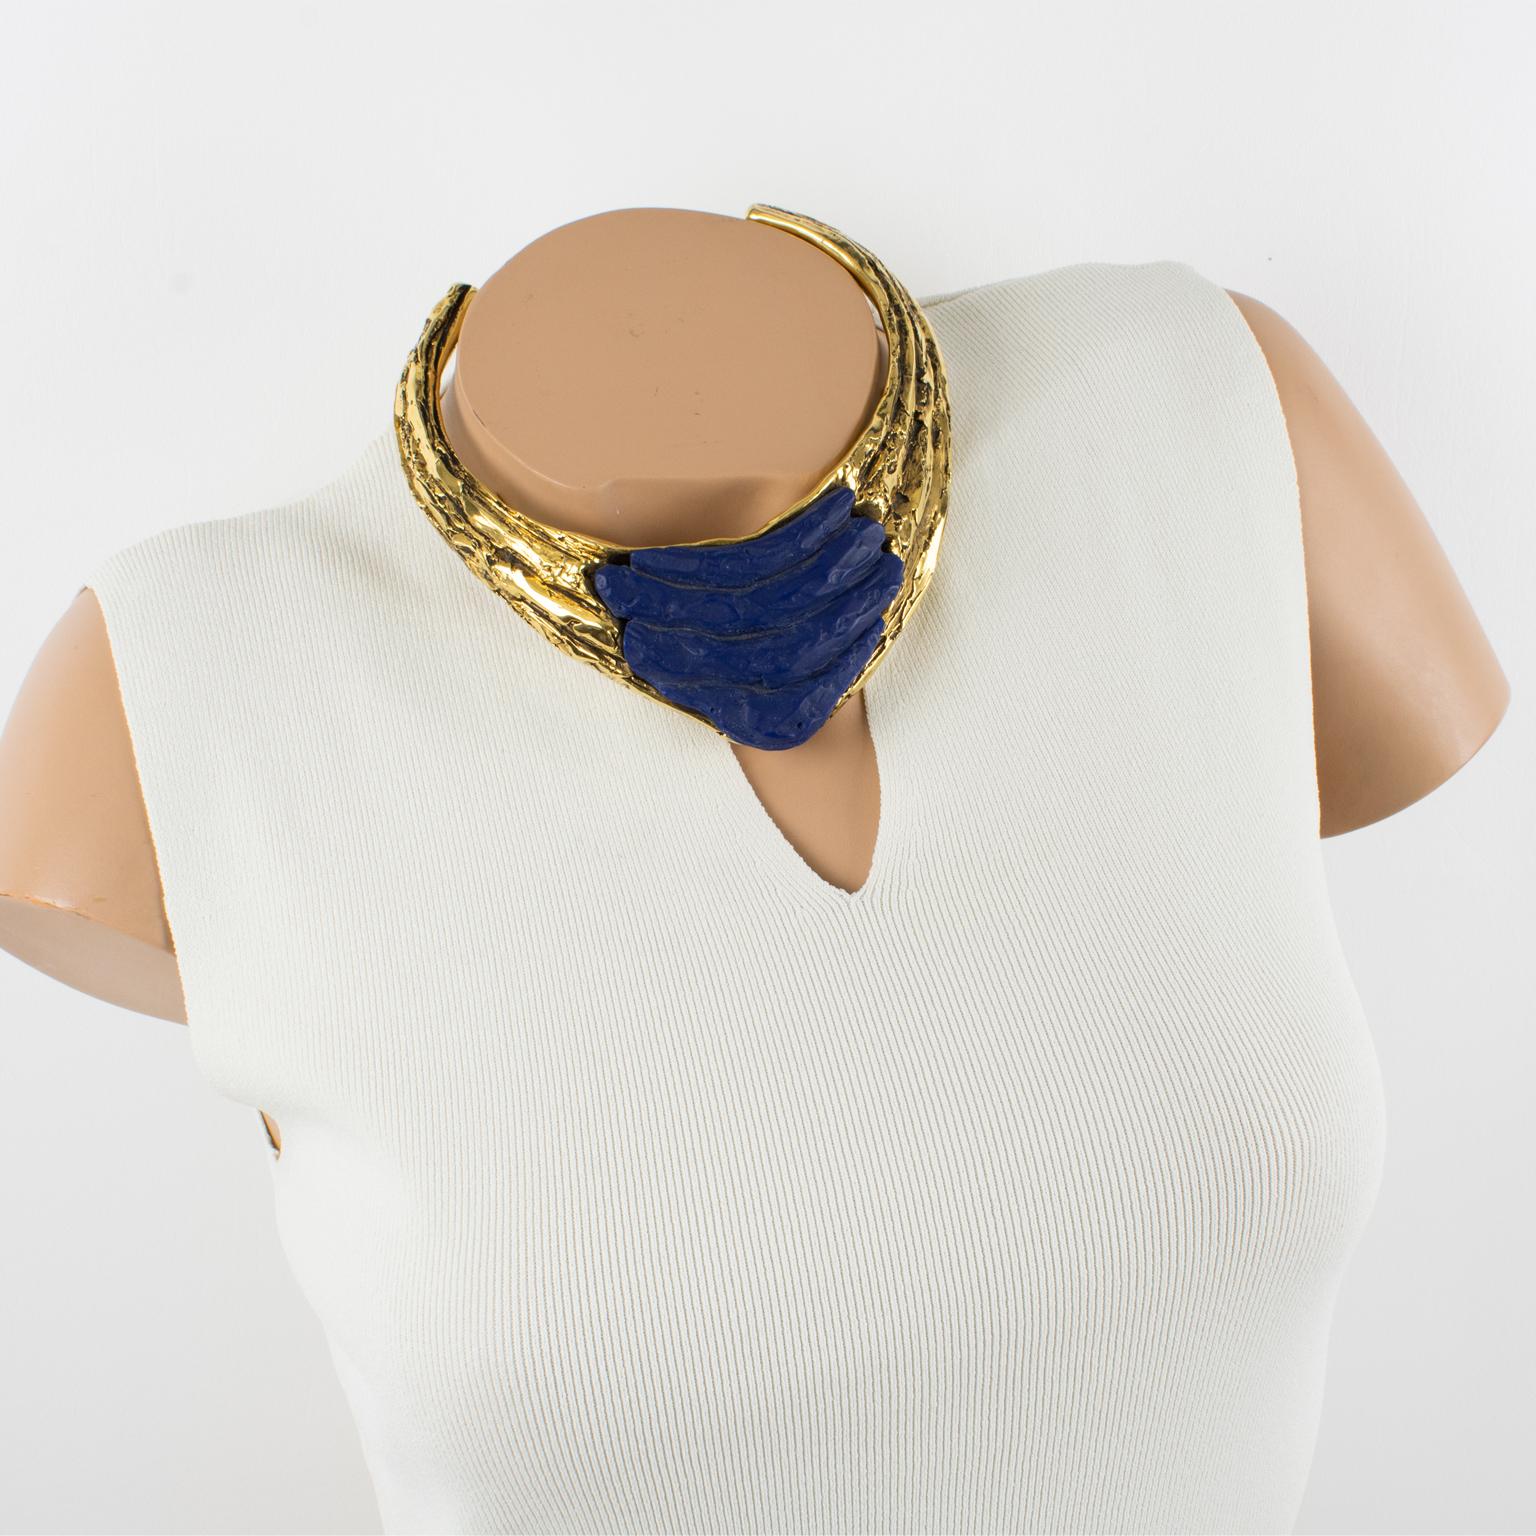 Claude Montana Paris a créé ce spectaculaire collier autour du cou pour Claire Design/One dans les années 1980. La forme massive du couple présente un design futuriste brutaliste construit avec de la résine recouverte de métal doré. La pièce est